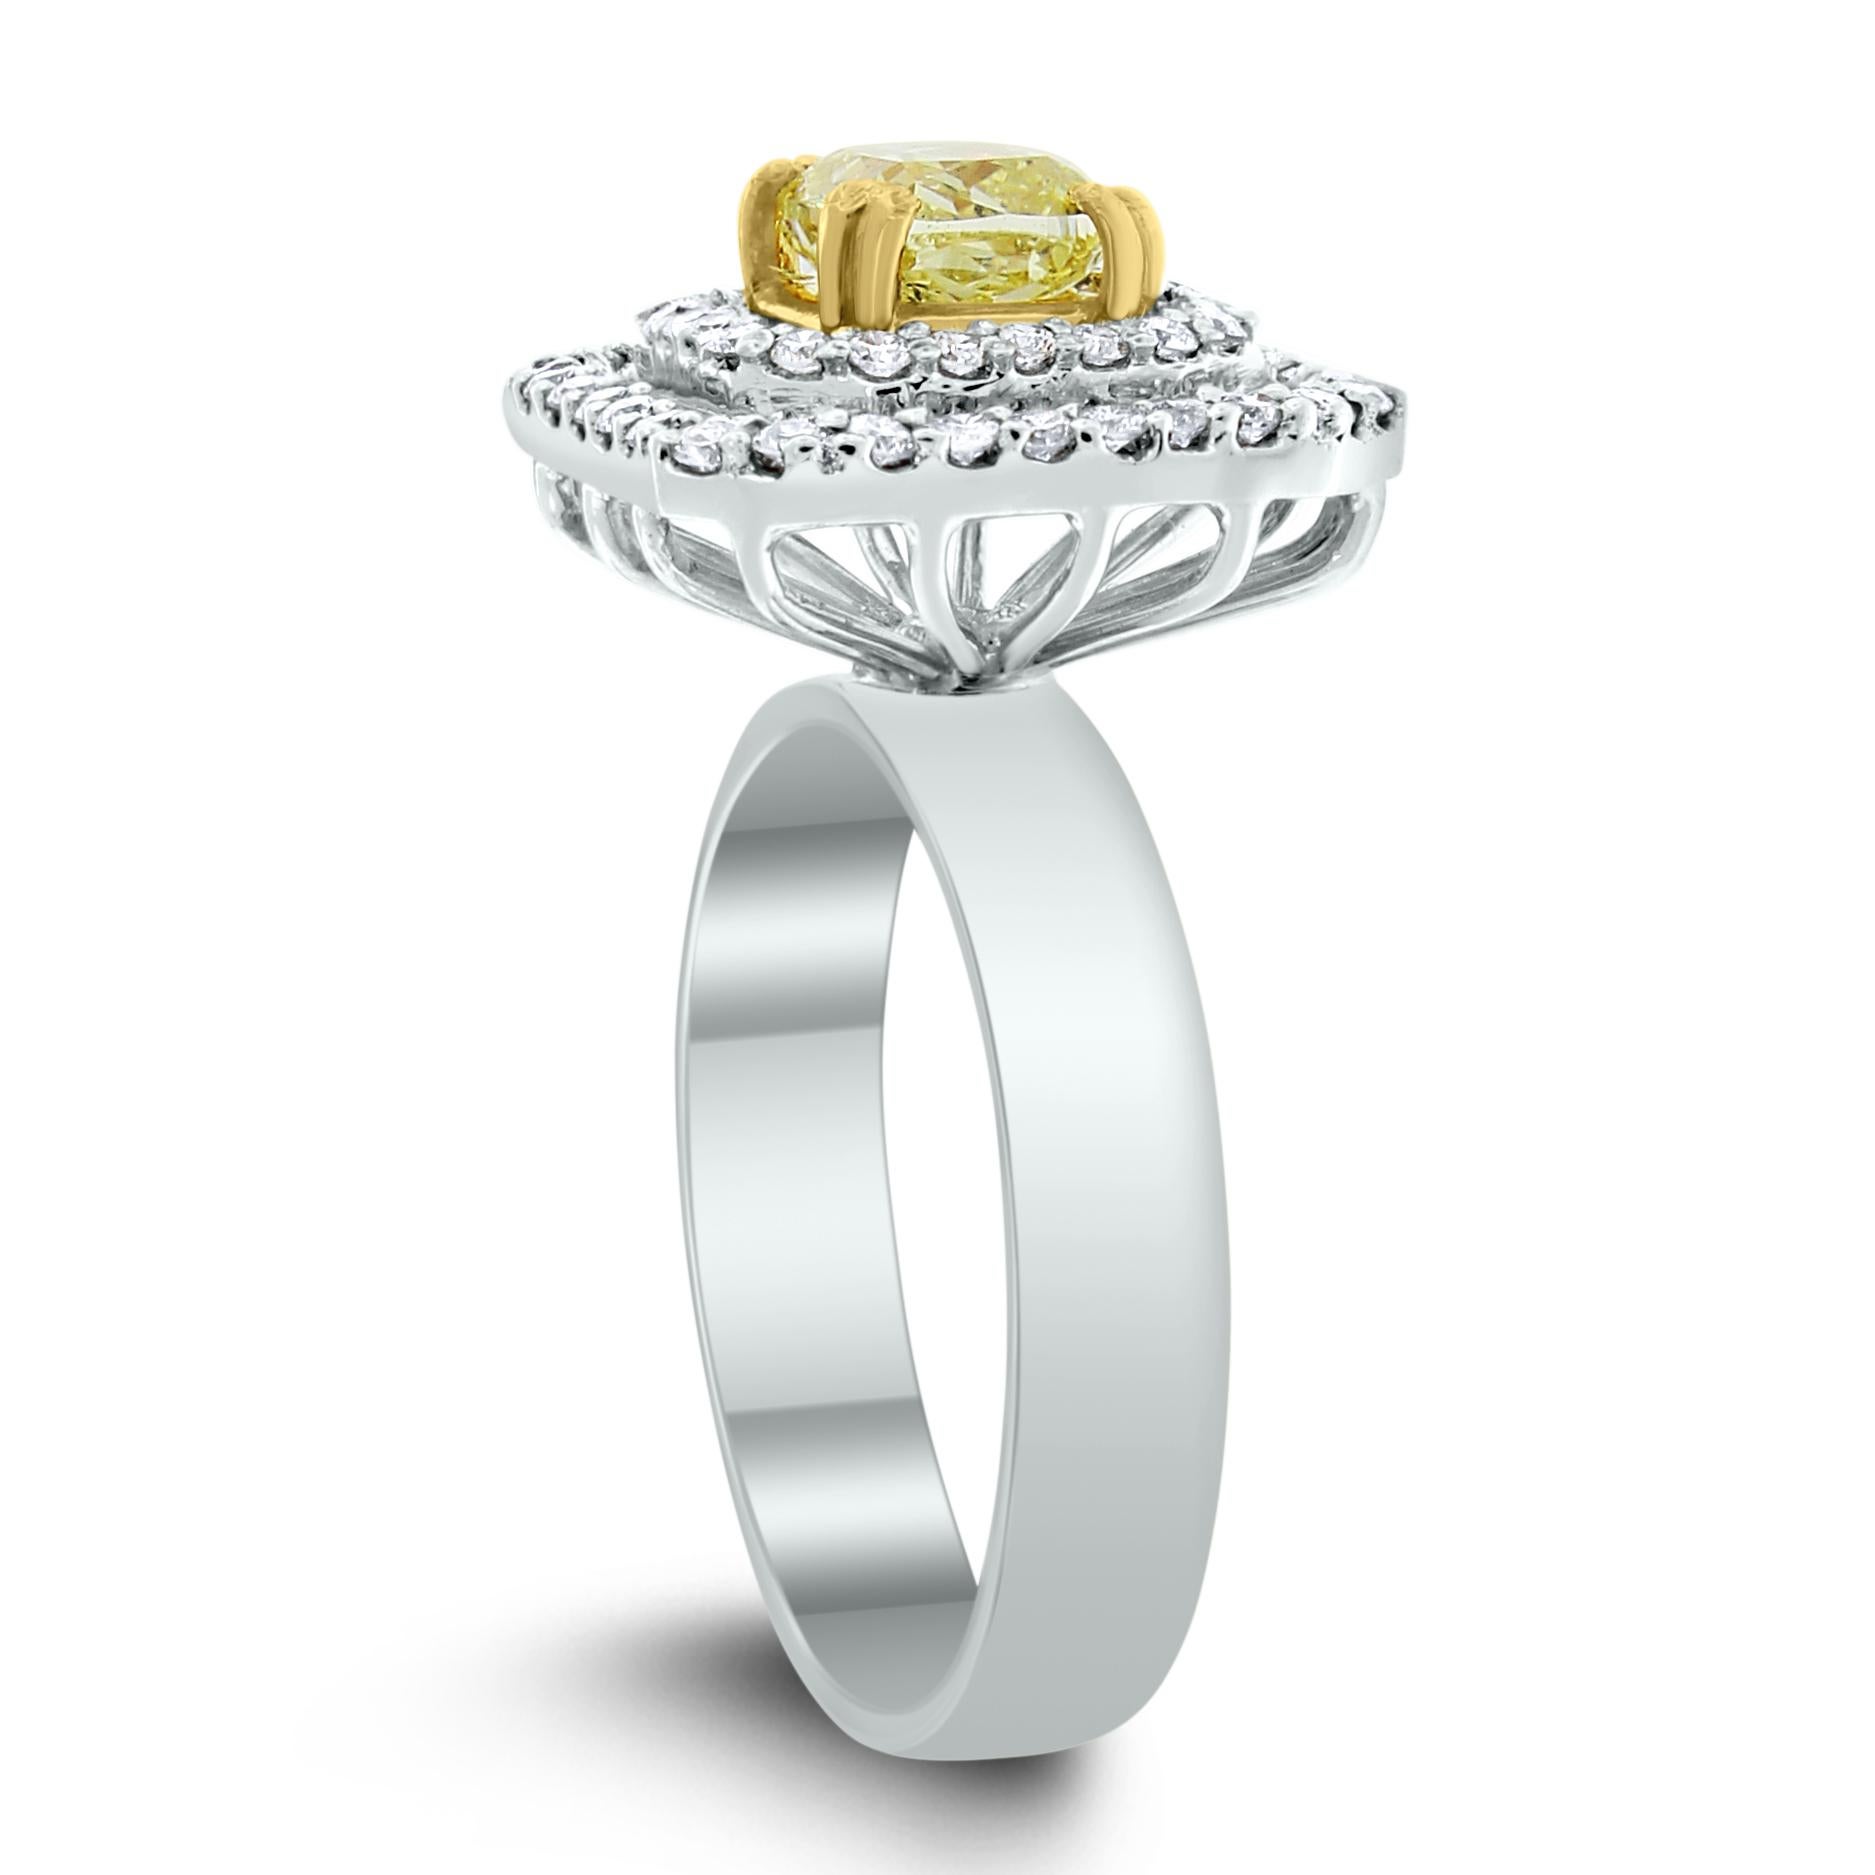 Der Beauvince Summer Yellow & White Diamond Ring ist mit einem doppelten Halo aus weißen Diamanten um einen schillernden gelben Diamanten im Kissenschliff versehen, um einen auffallend leuchtenden Ring zu schaffen

Formen der Diamanten: Kissen &